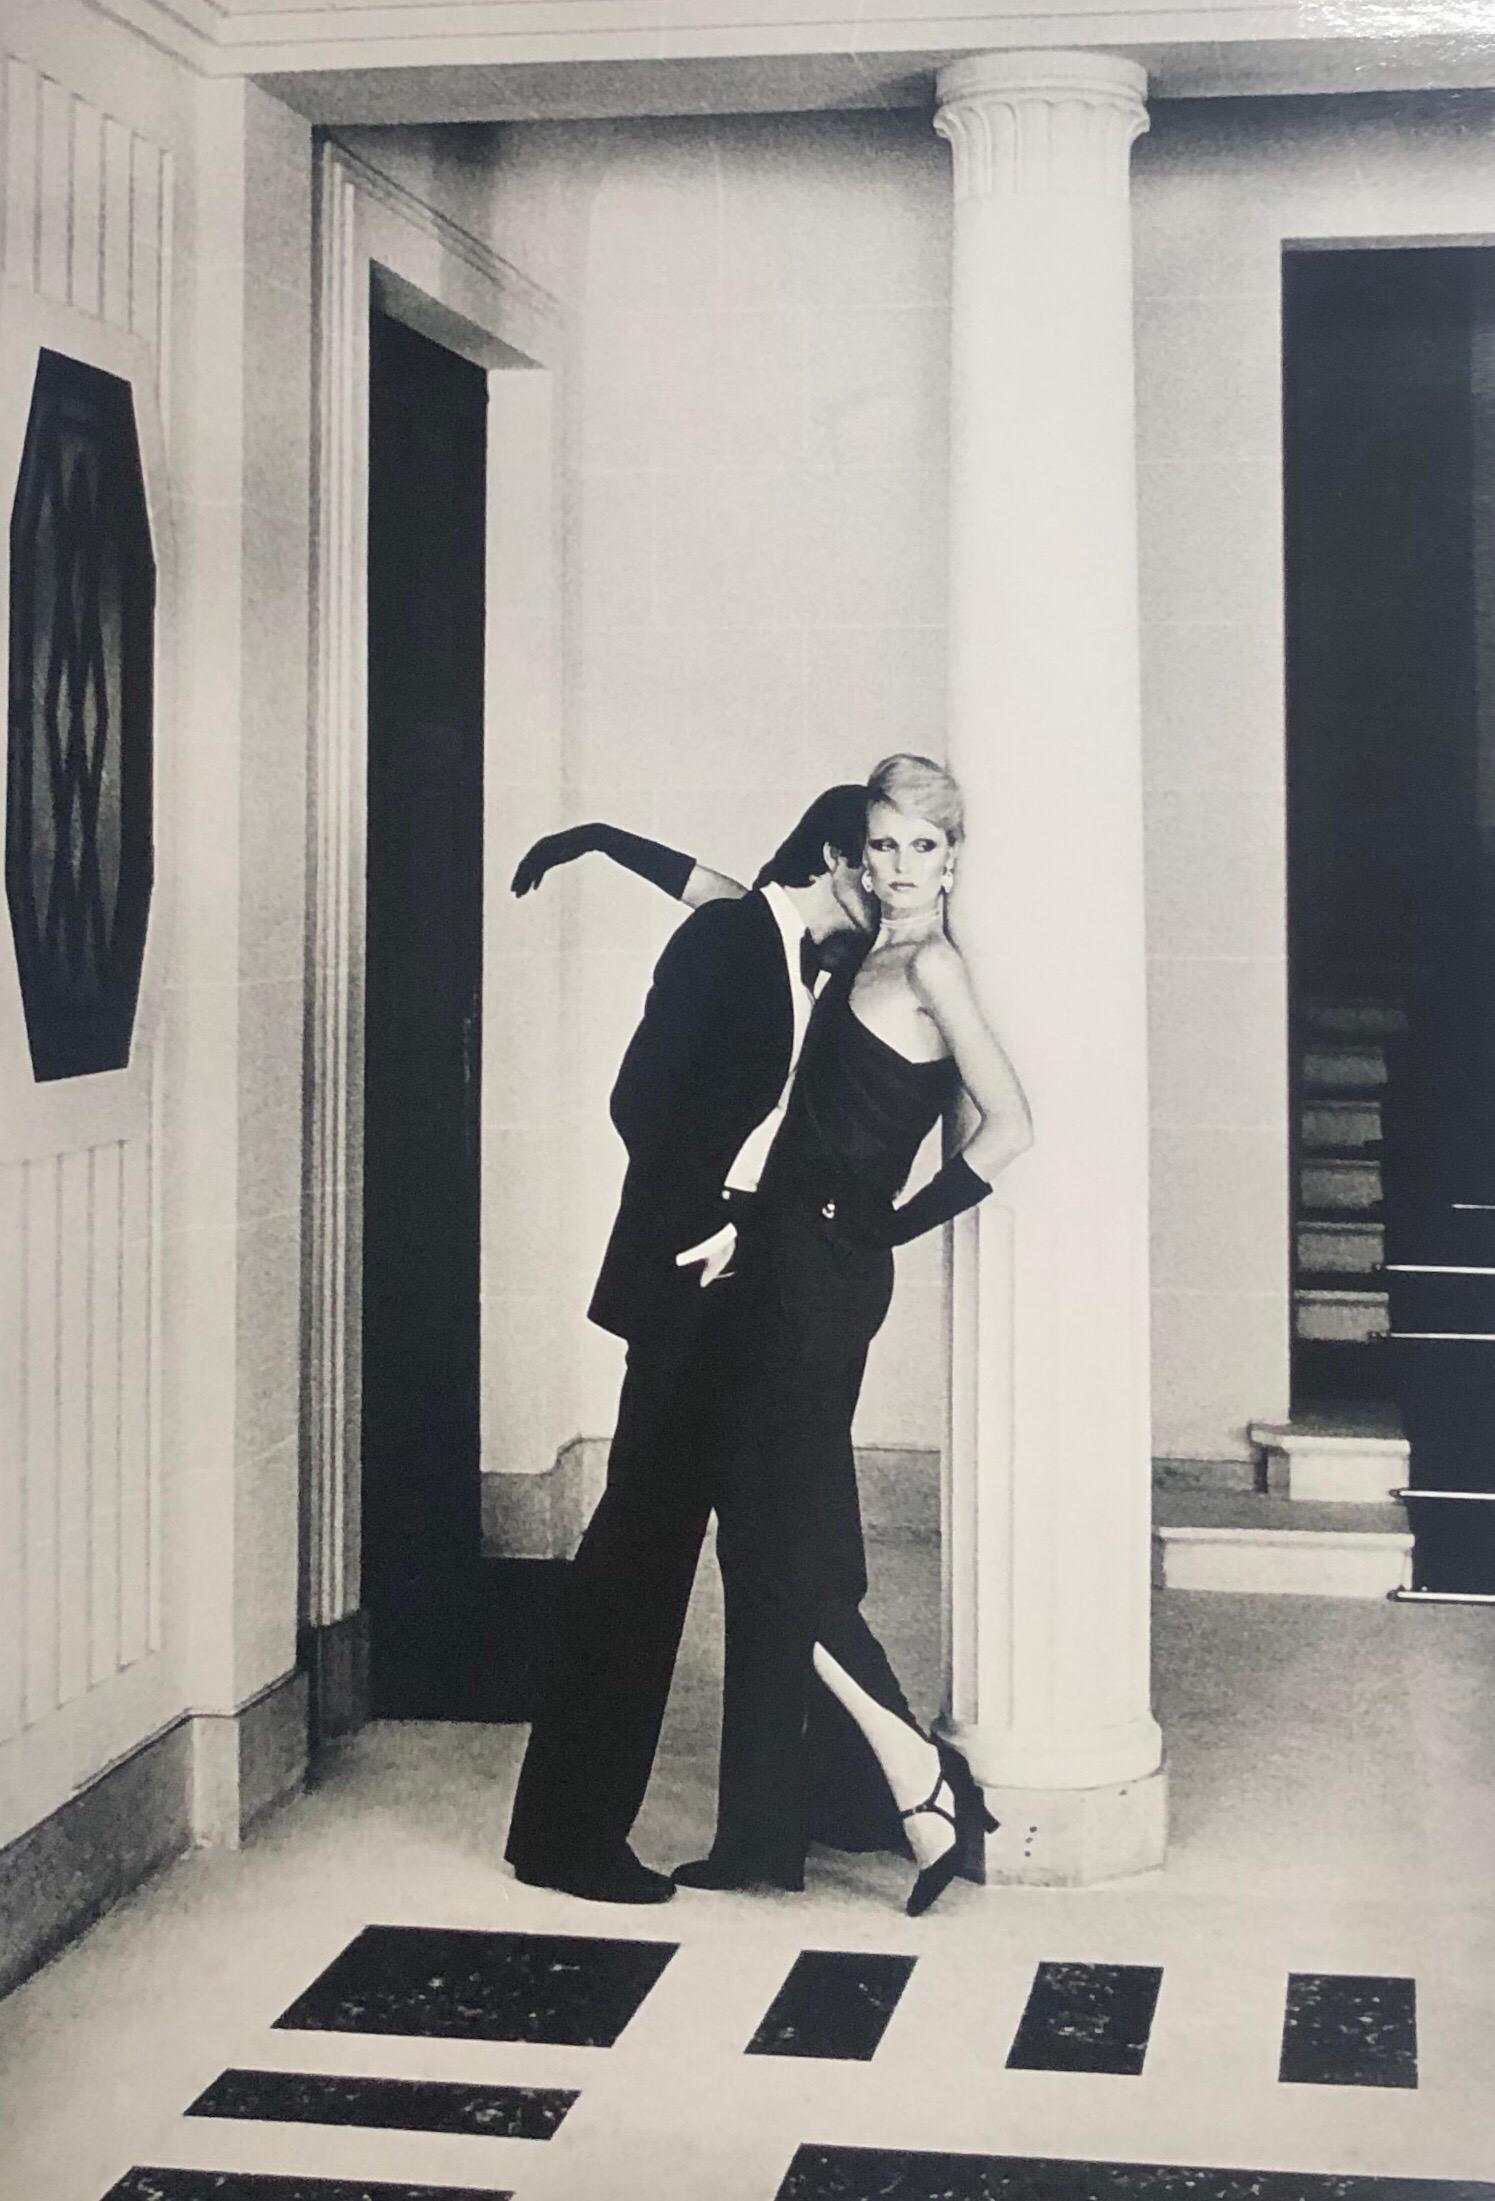 "Mann küsst Frau, Paris" Silbergelatine-Druck von Helmut Newton, aufgenommen für YSL und die französische Vogue.  Das Bild misst ungefähr 13 "x19" auf einem 16,5 "x20" großen Silbergelatineblatt.  Eines der beliebtesten Bilder der Kollektion